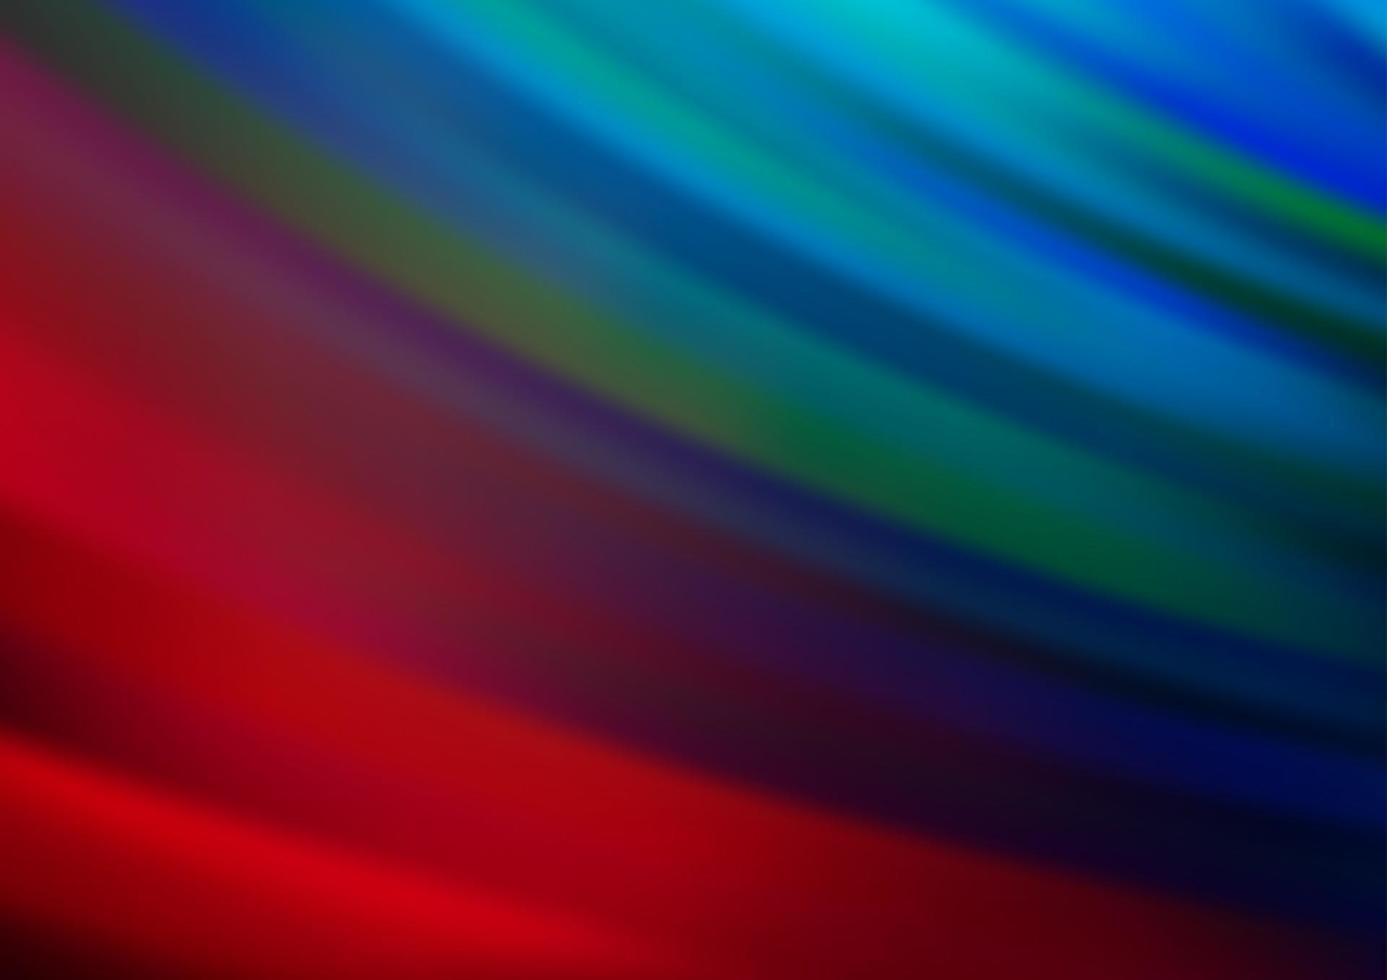 Telón de fondo de vector azul oscuro, rojo con líneas largas.